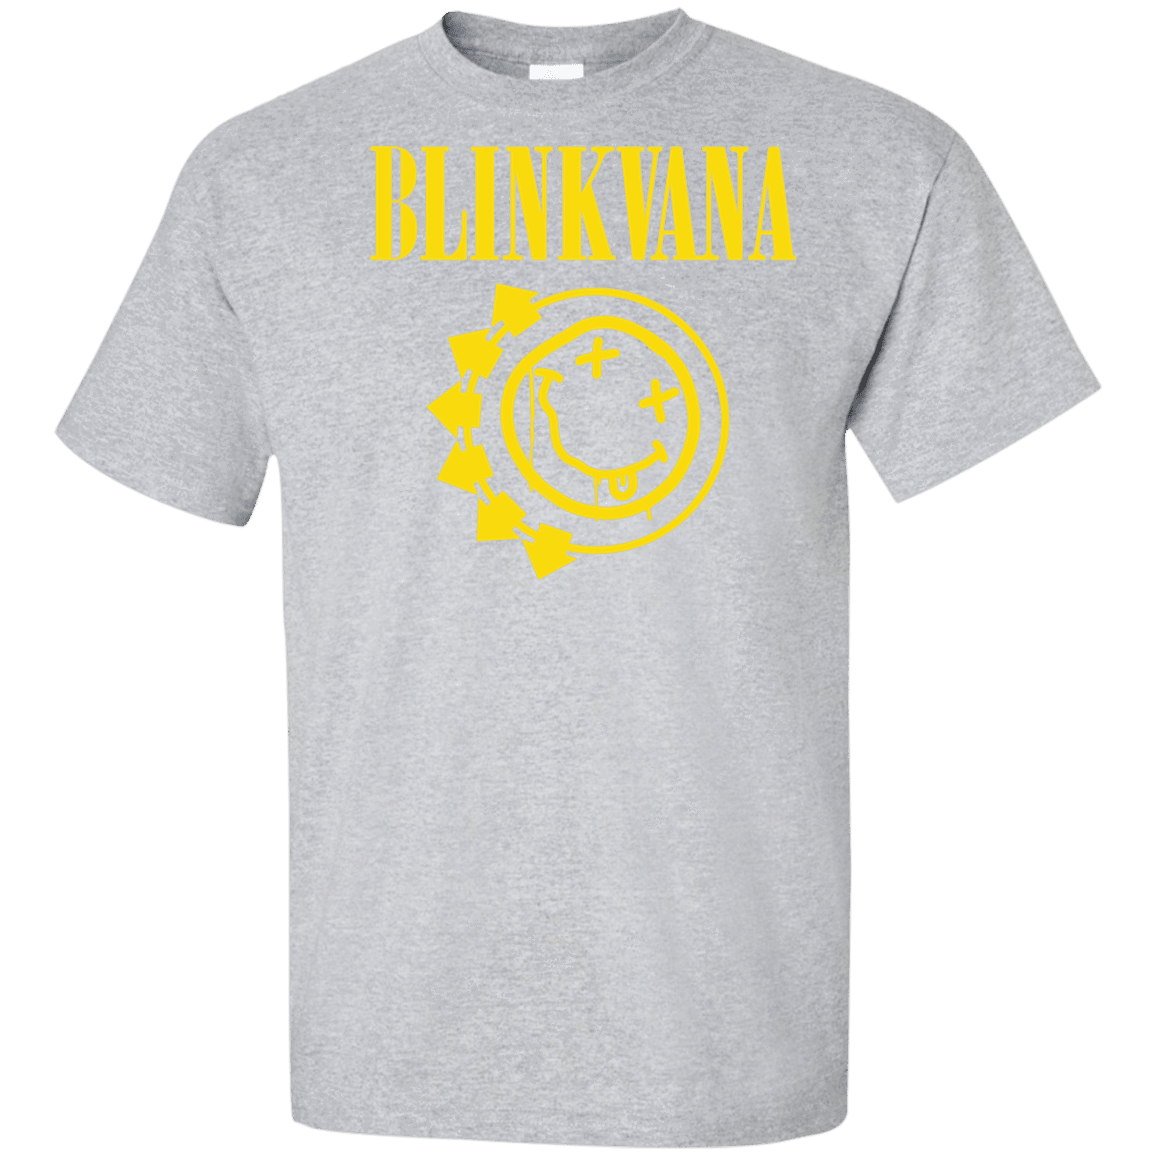 T-Shirts Sport Grey / XLT Blinkvana Tall T-Shirt